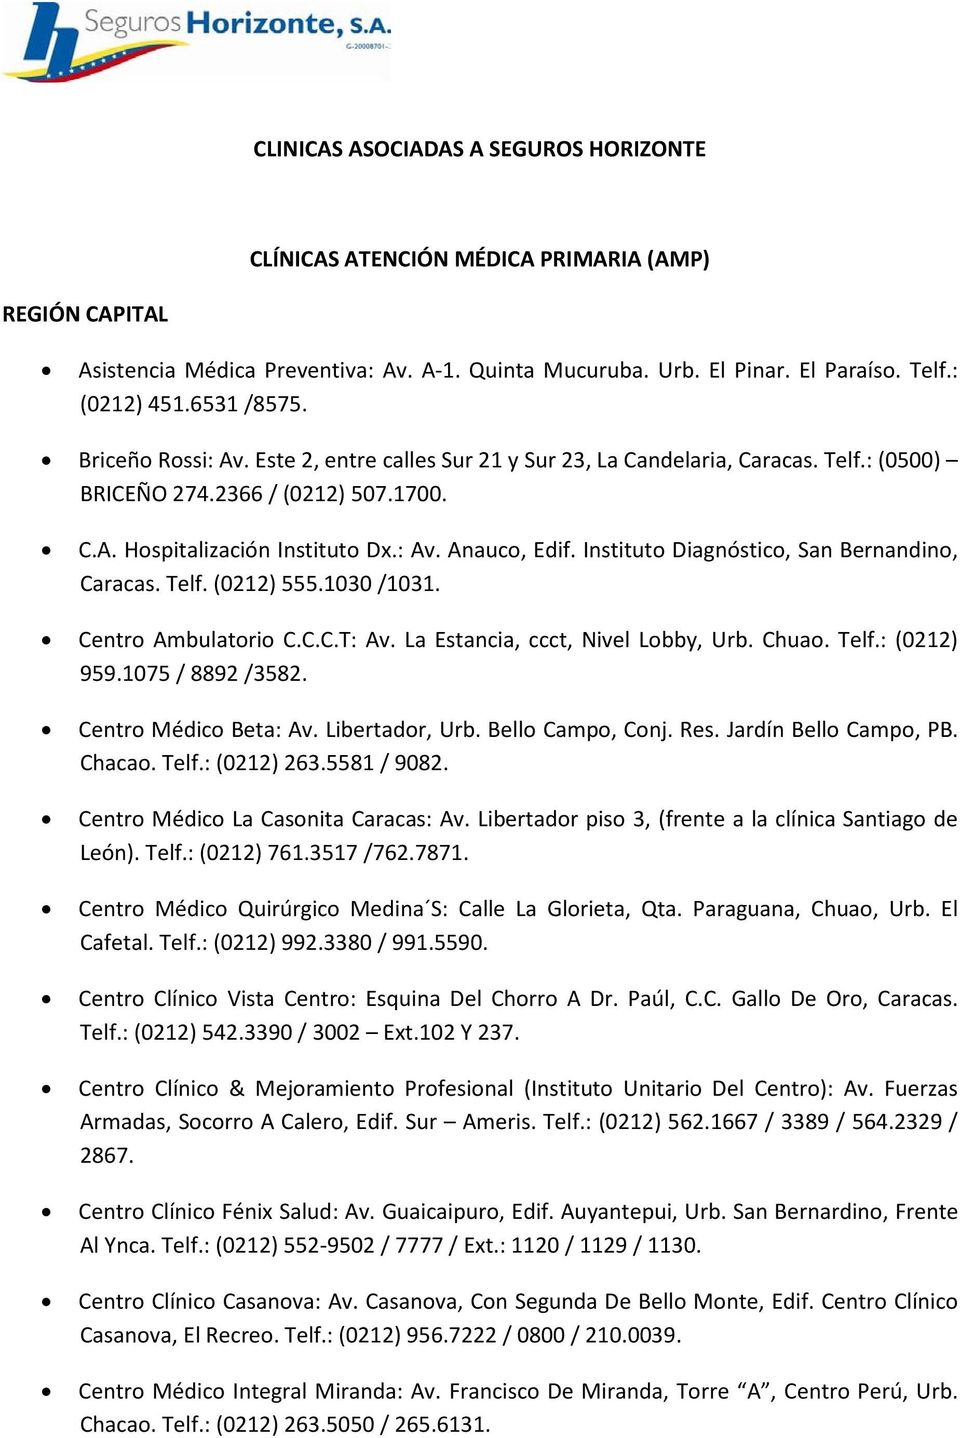 Instituto Diagnóstico, San Bernandino, Caracas. Telf. (0212) 555.1030 /1031. Centro Ambulatorio C.C.C.T: Av. La Estancia, ccct, Nivel Lobby, Urb. Chuao. Telf.: (0212) 959.1075 / 8892 /3582.